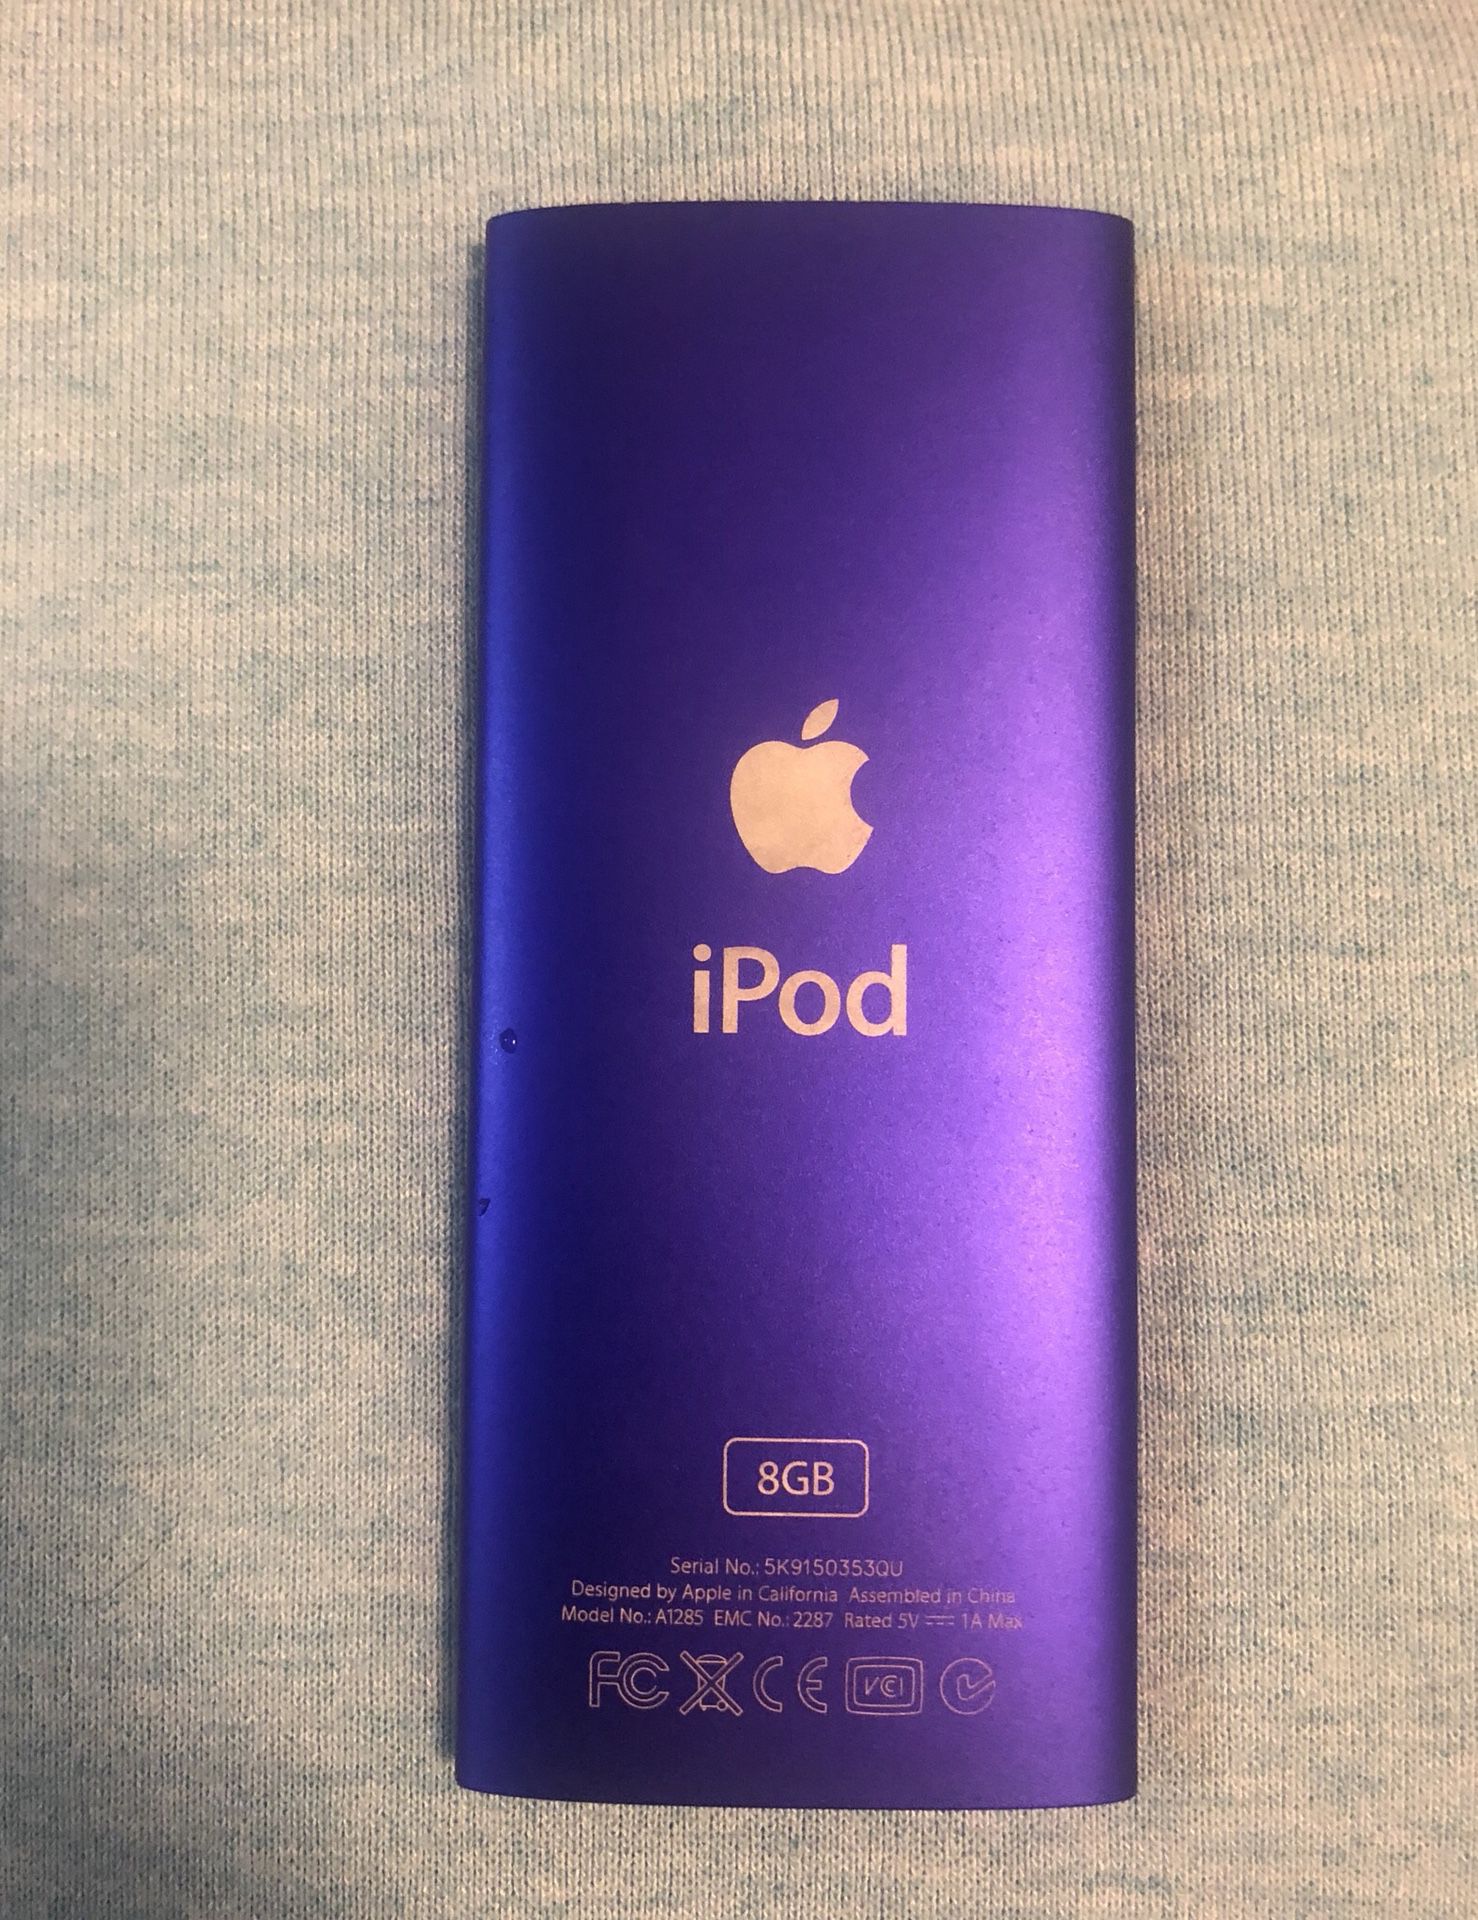 5th generation 8GB iPod, purple